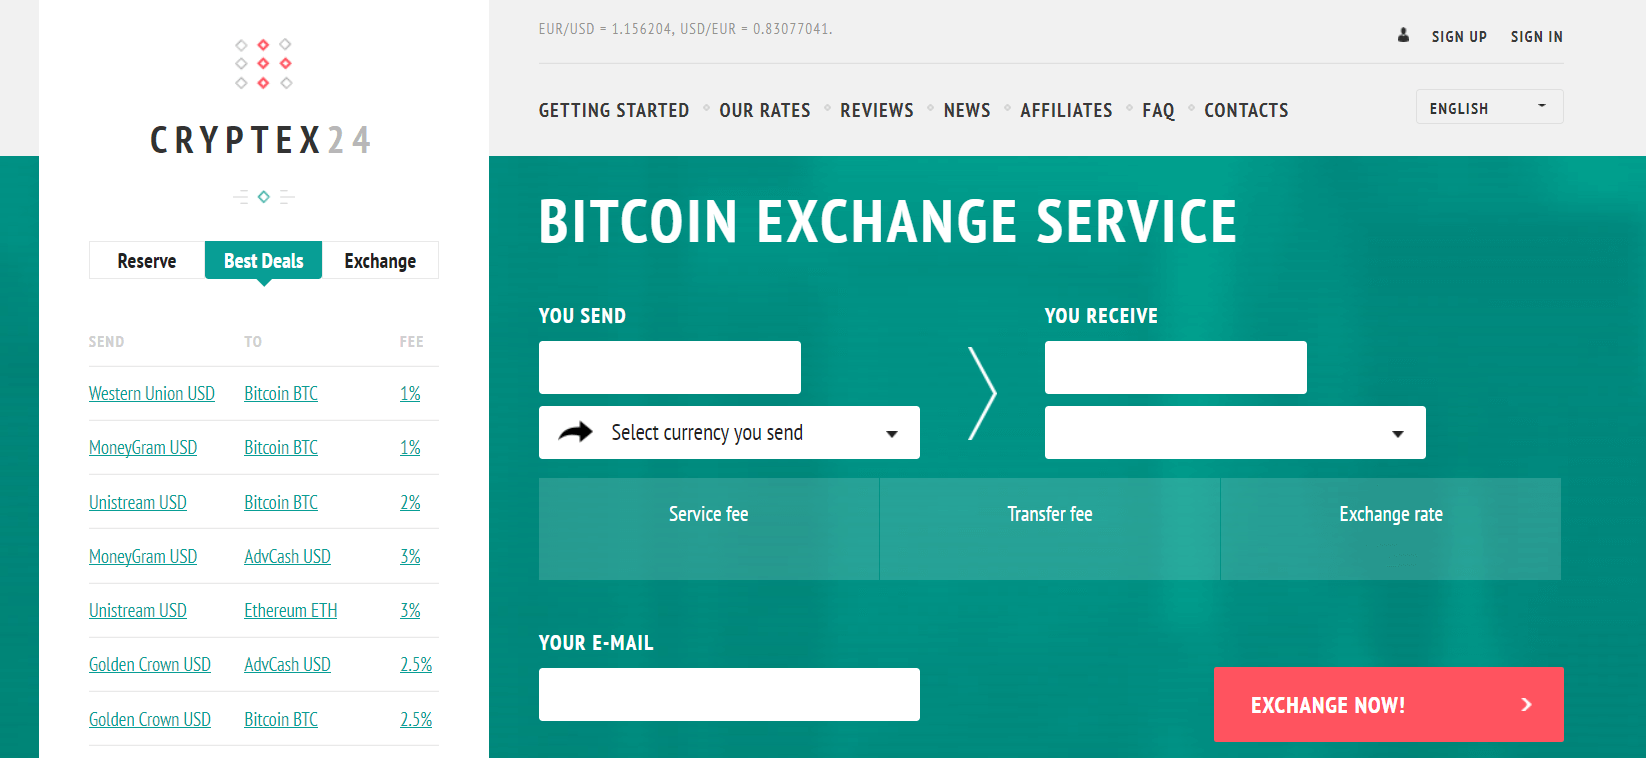 Cryptex24 exchange